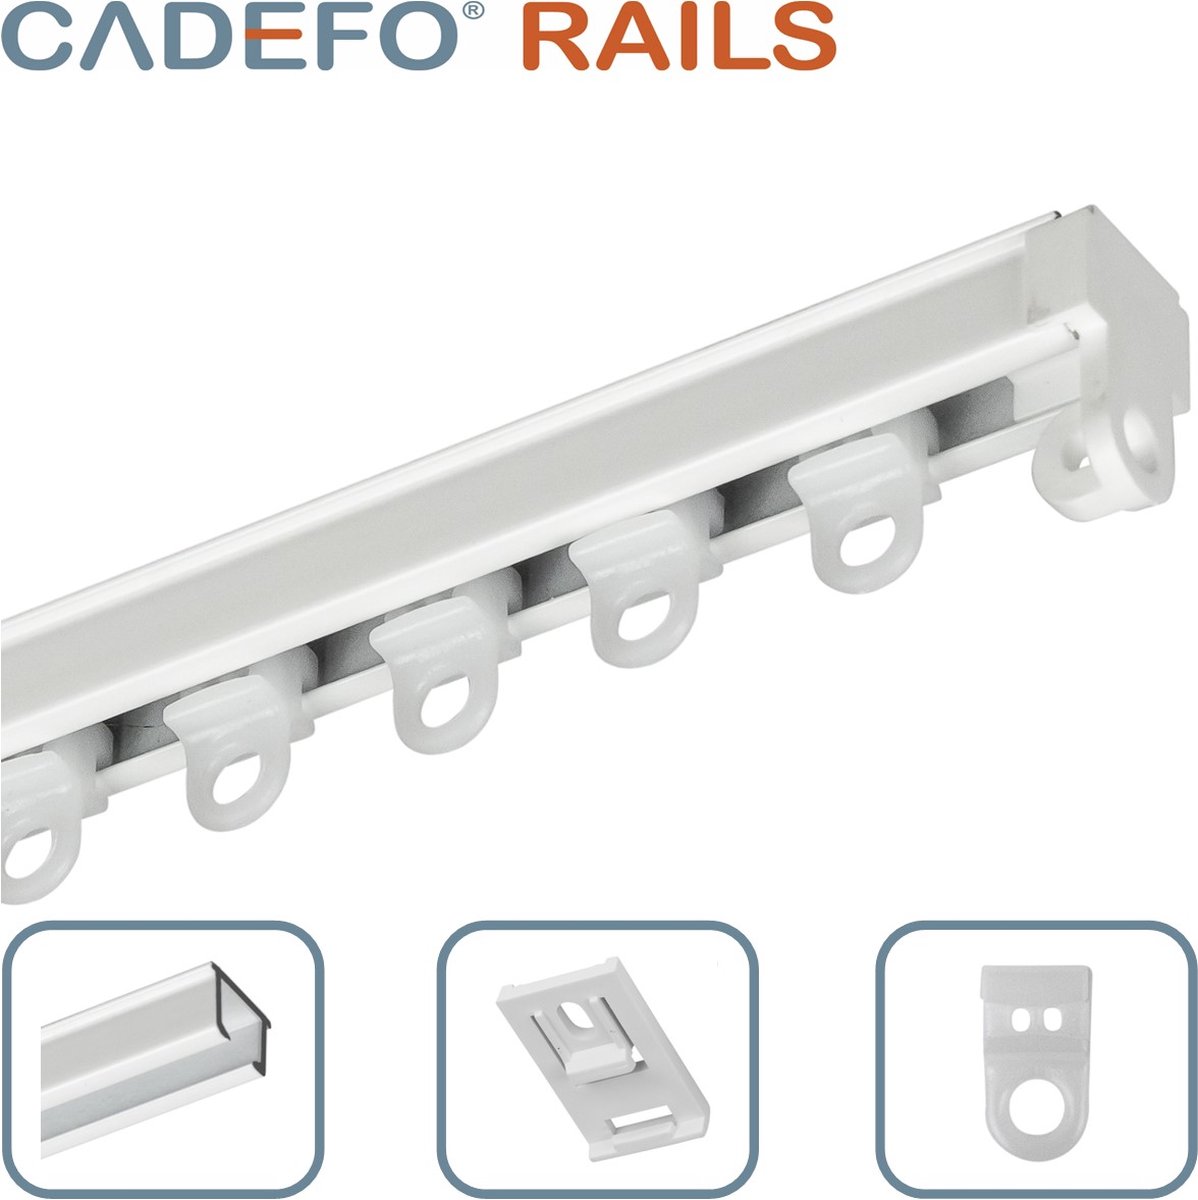 CADEFO RAILS (401 - 450 cm) Gordijnrails - Compleet op maat! - UIT 1 STUK - Leverbaar tot 6 meter - Plafondbevestiging - Lengte 416 cm